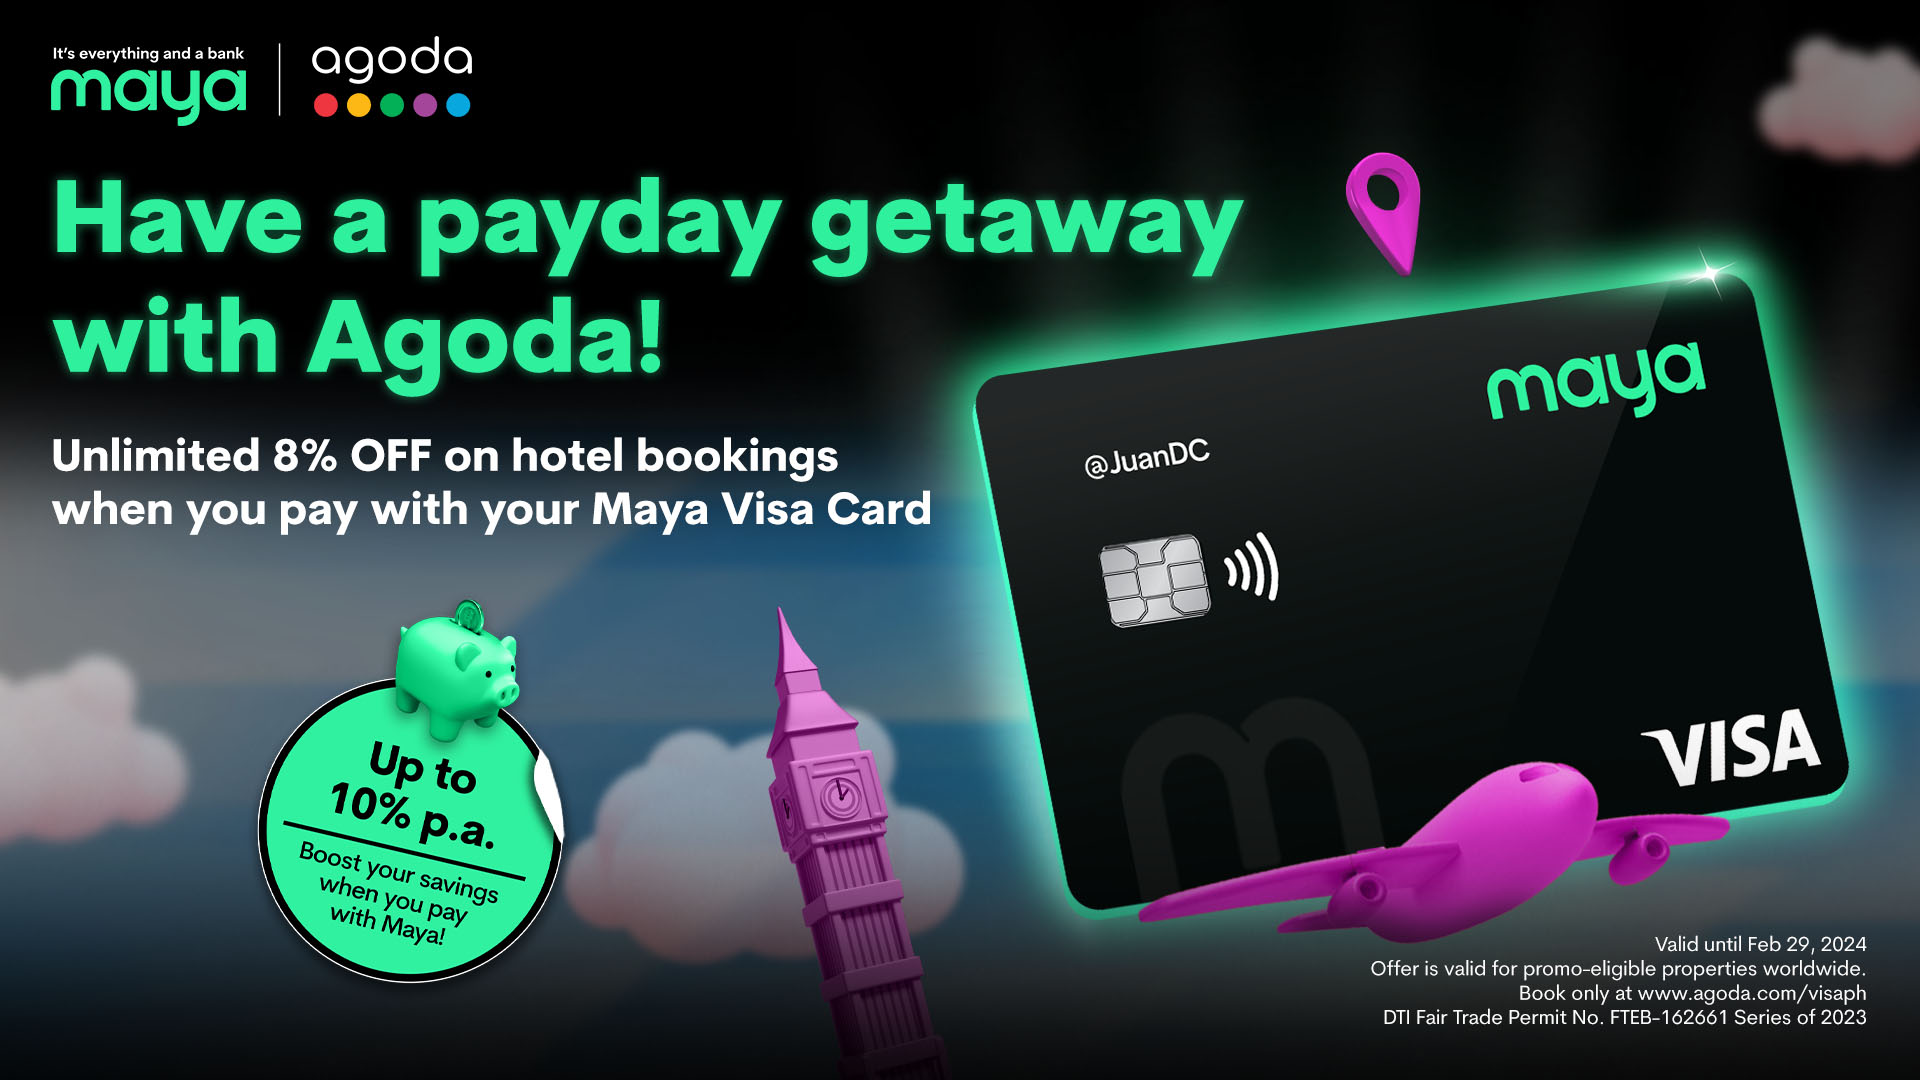 062323 - Maya - EN - visa agoda deals page copy